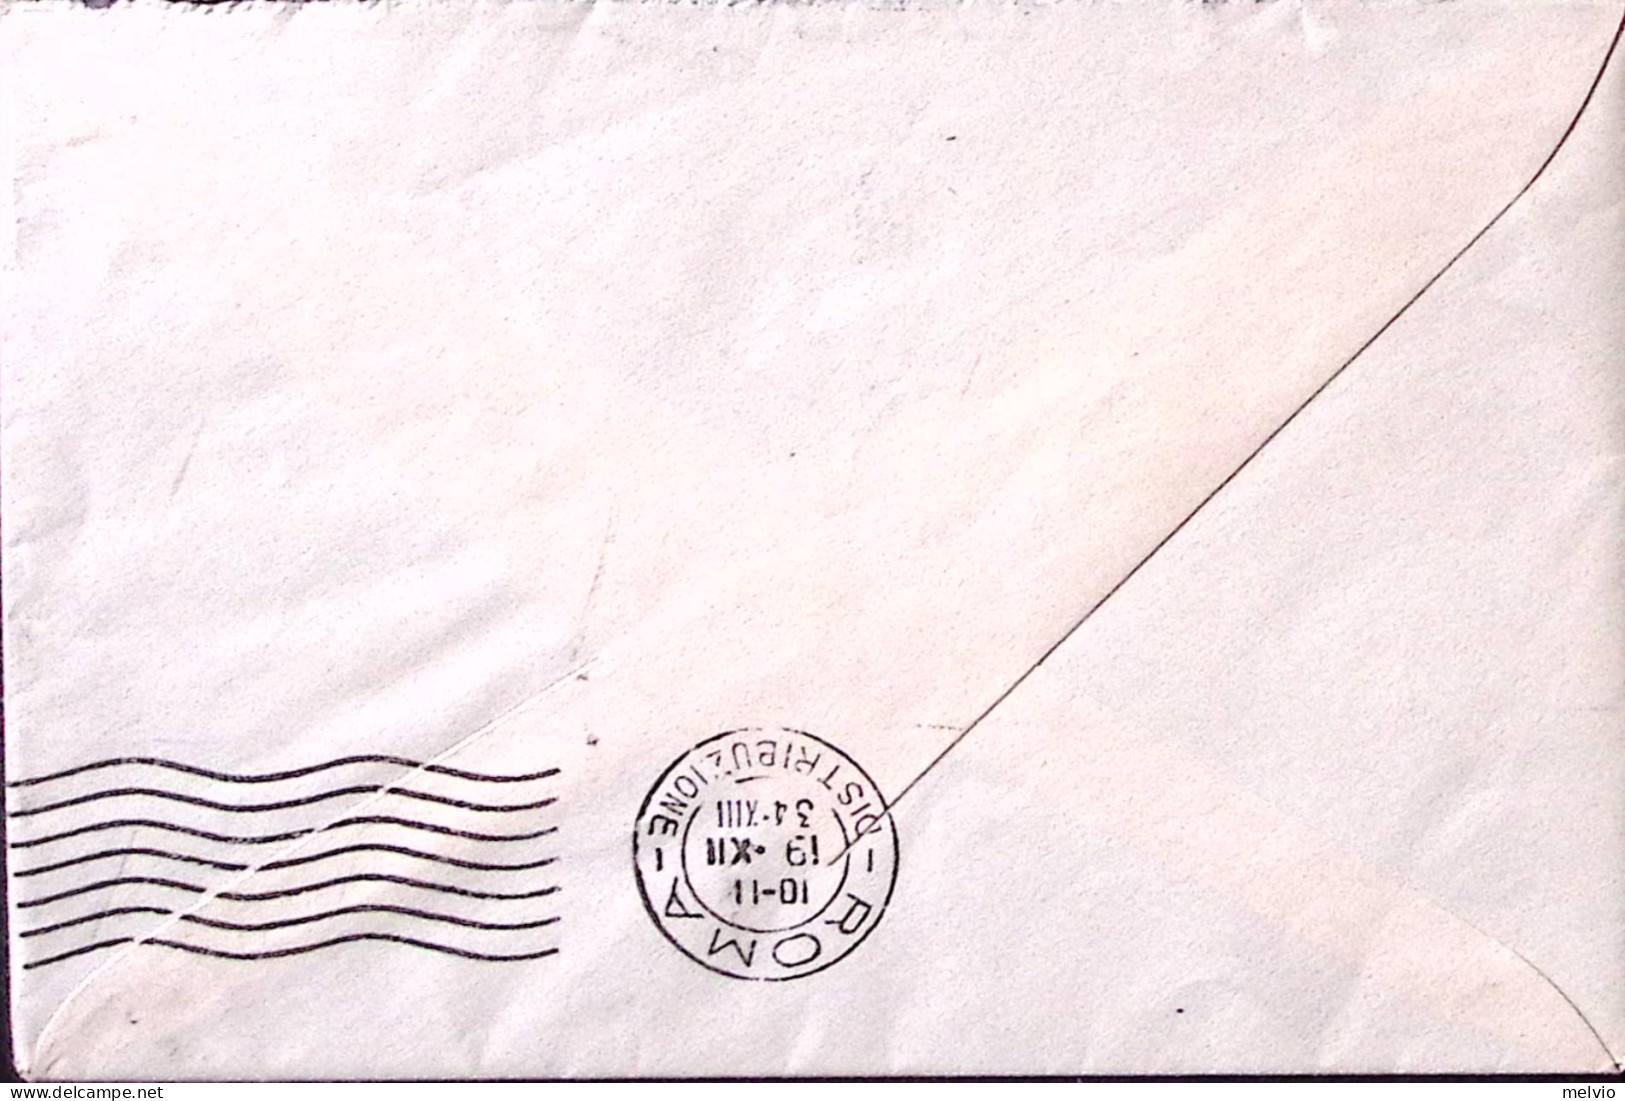 1934-EGEO M/N Postale Pietro Foscari (12.12) Su Busta Affr. Egeo C.50 - Egeo